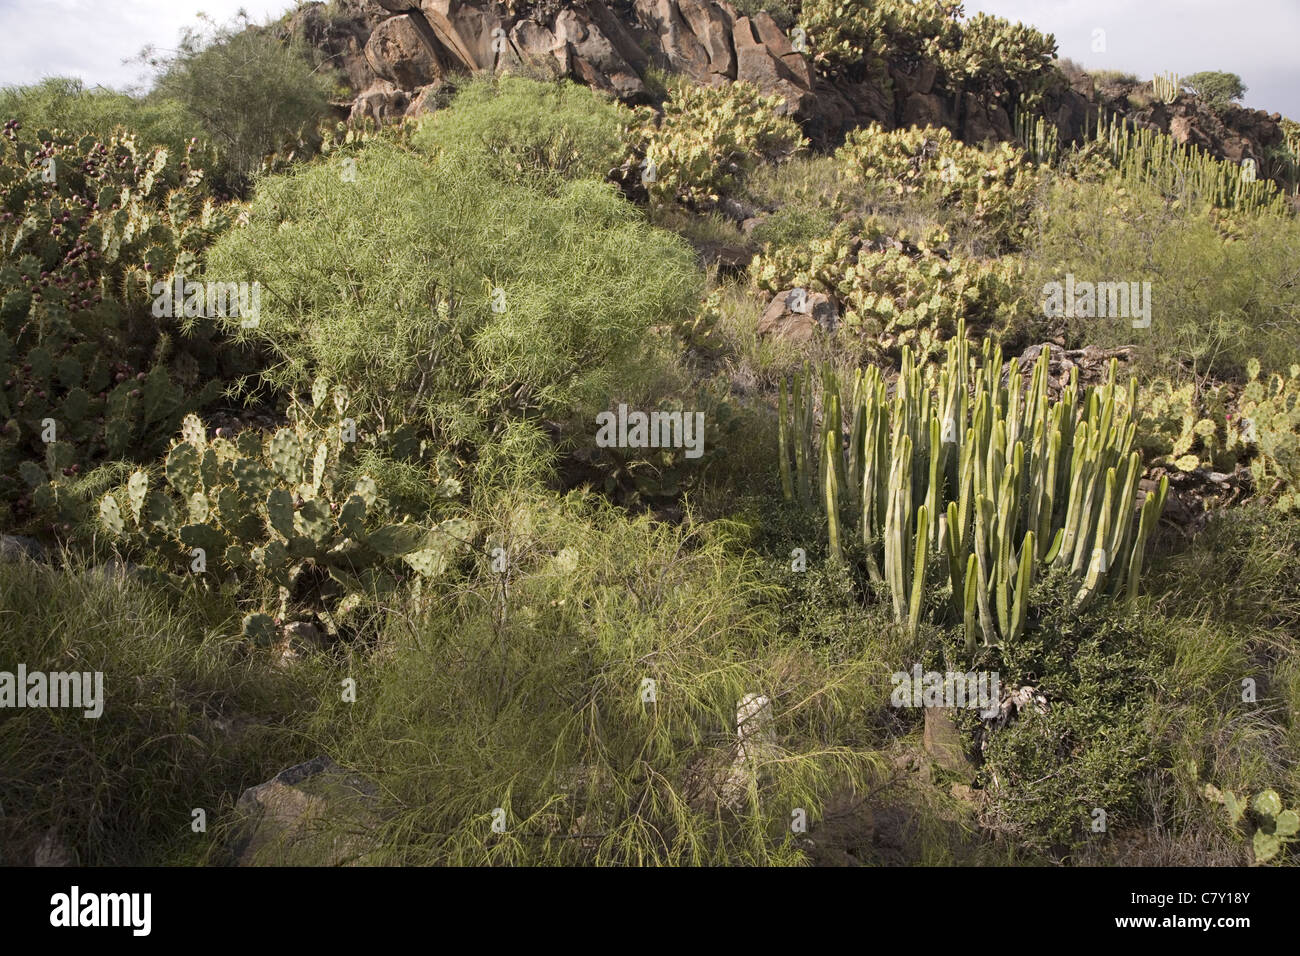 La végétation désertique semi avec o.a. Le figuier de Barbarie et de l'Euphorbe ésule Canary Island près de Adeje, Tenerife, Canaries, Espagne Banque D'Images